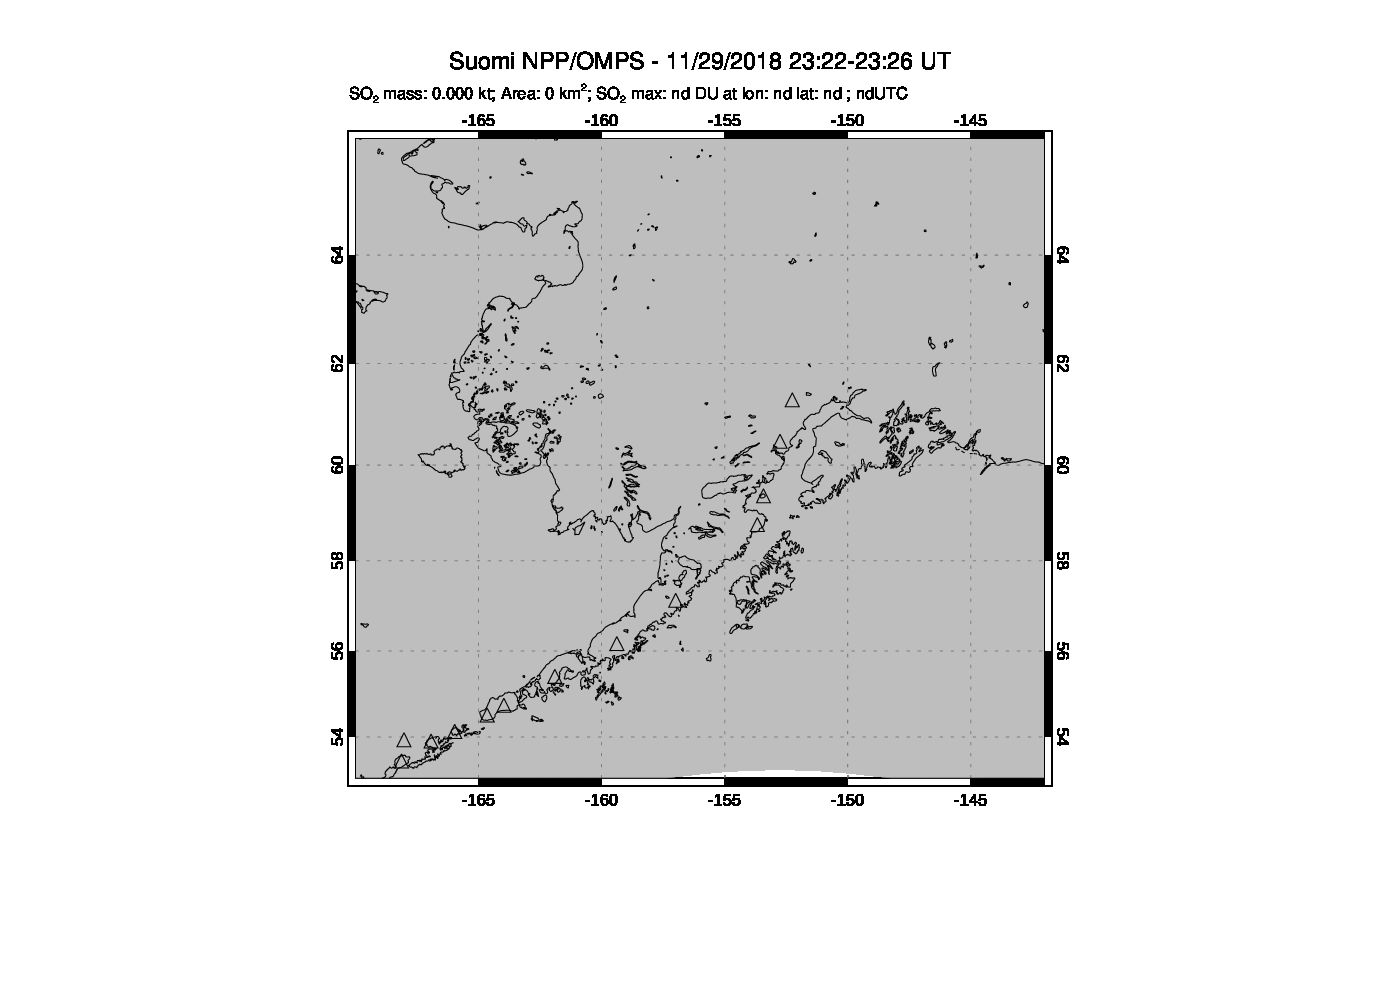 A sulfur dioxide image over Alaska, USA on Nov 29, 2018.